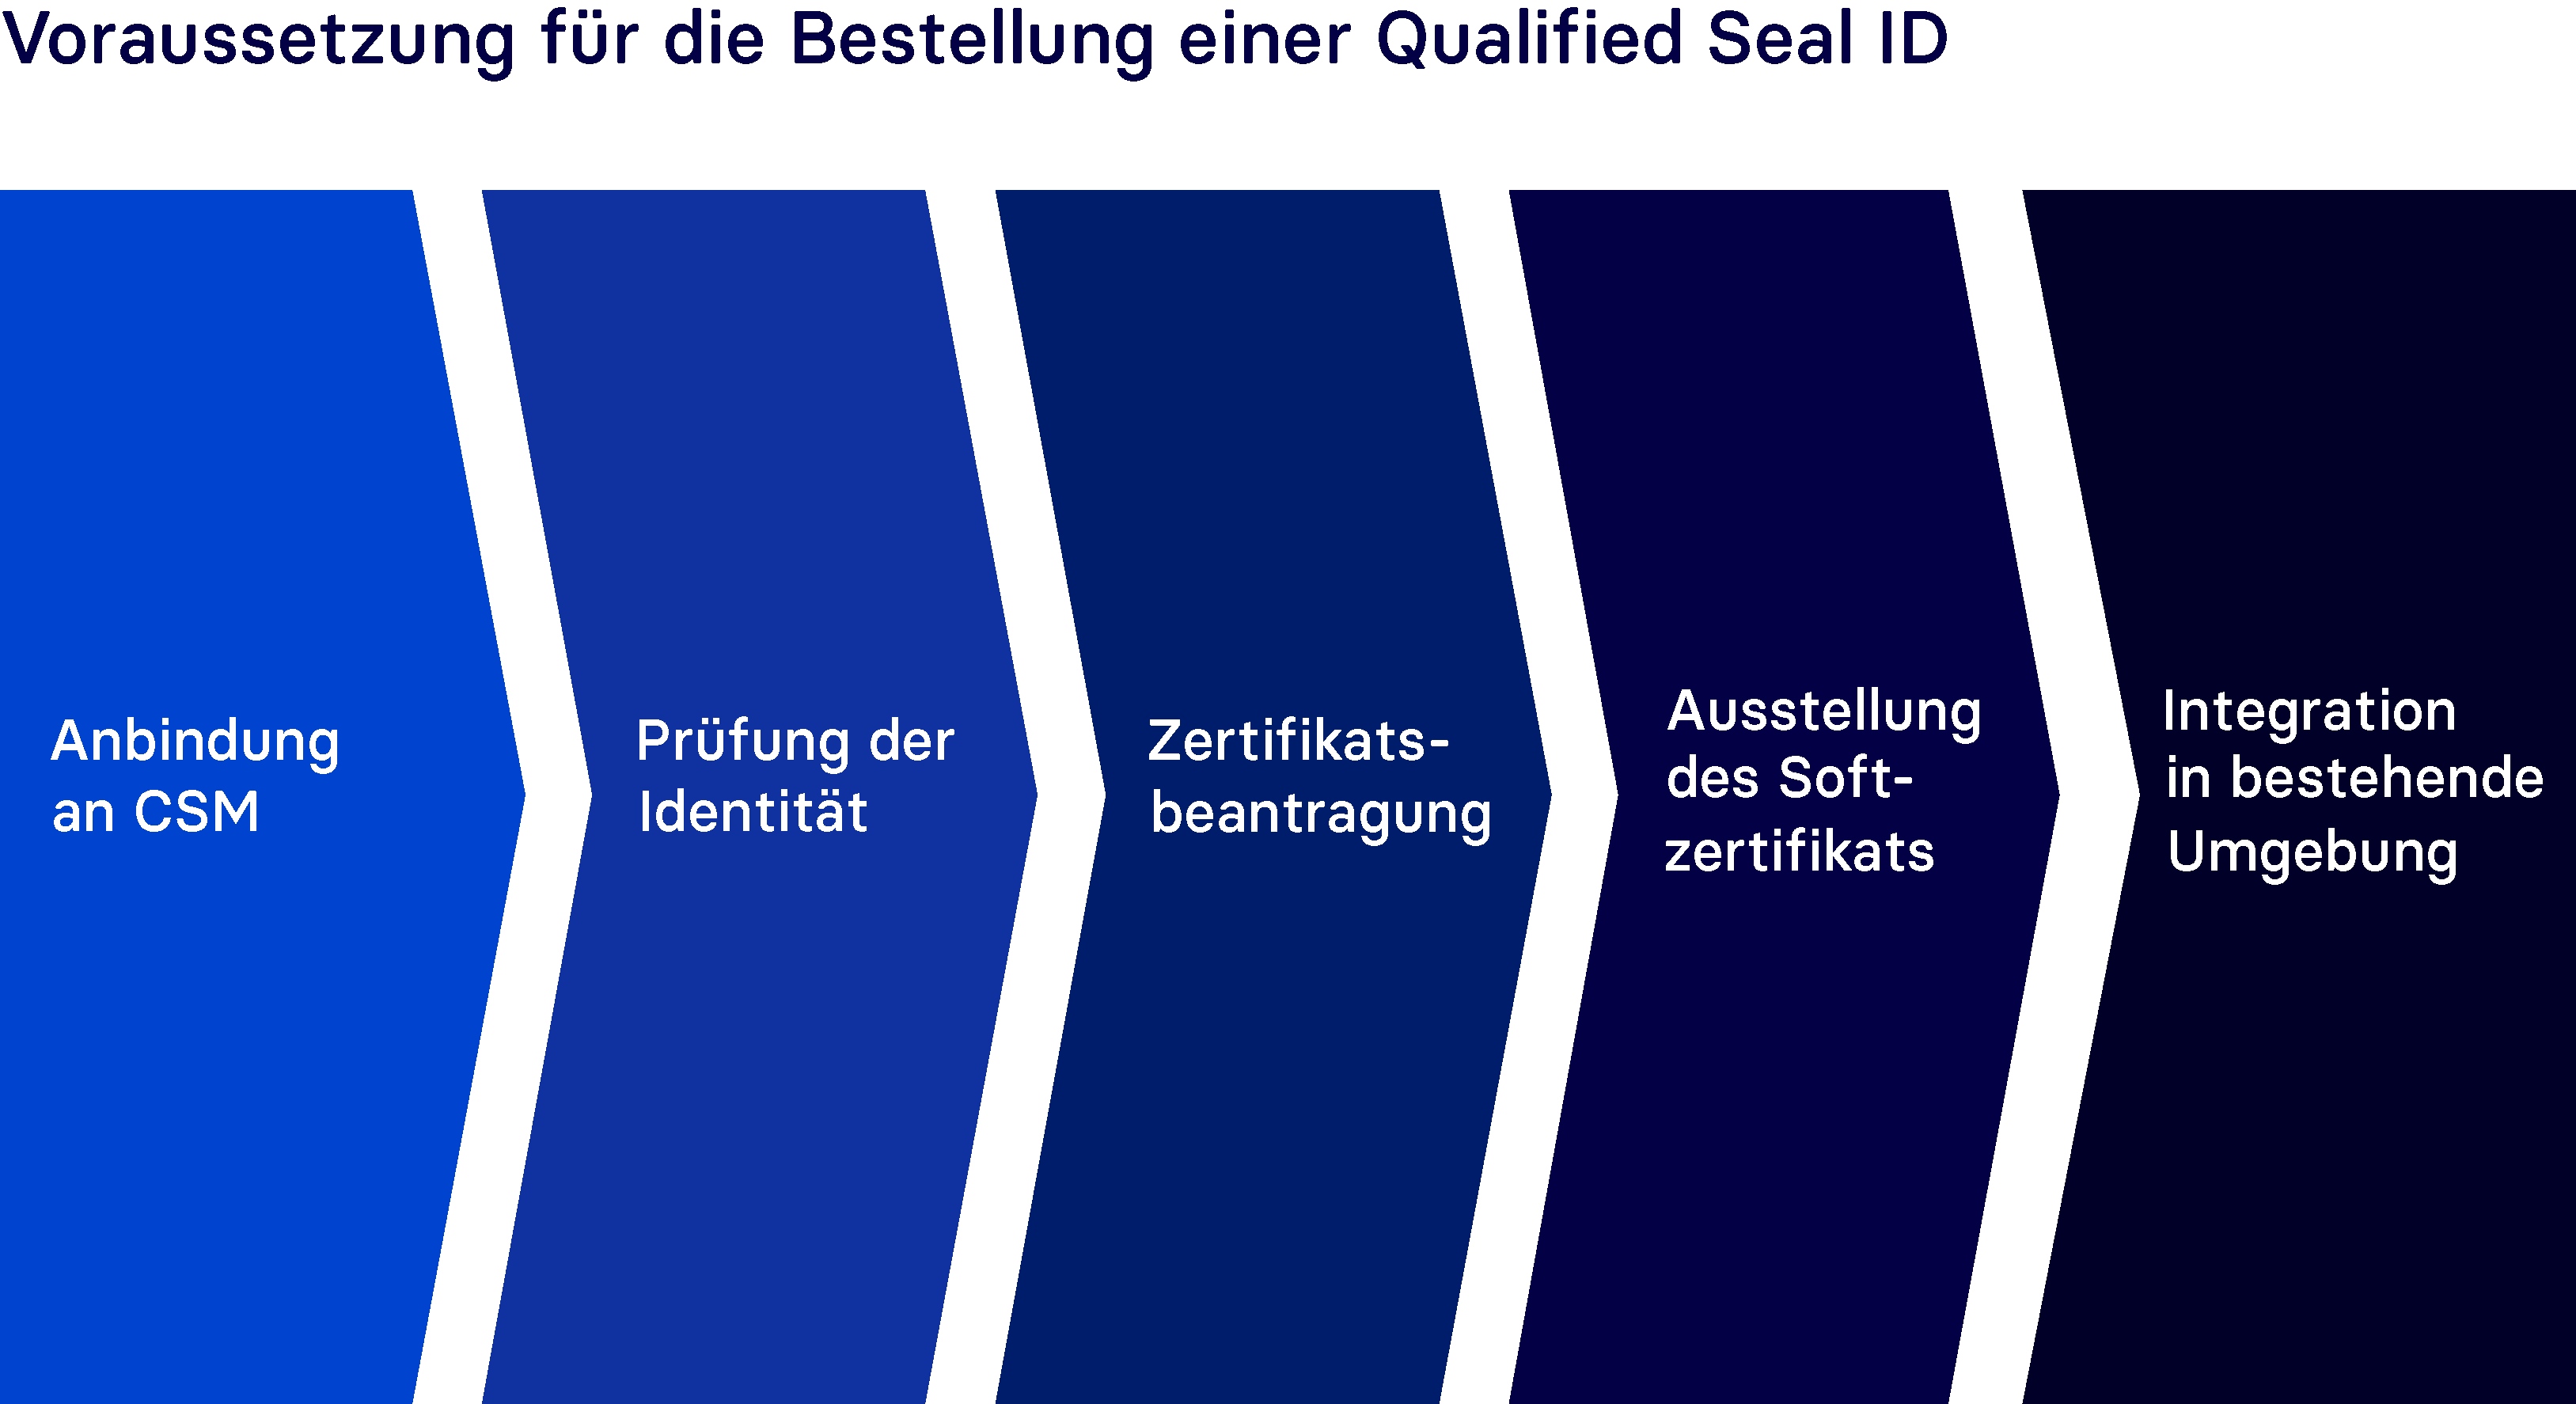 Voraussetzung für die Bestellung einer Qualified Seal ID